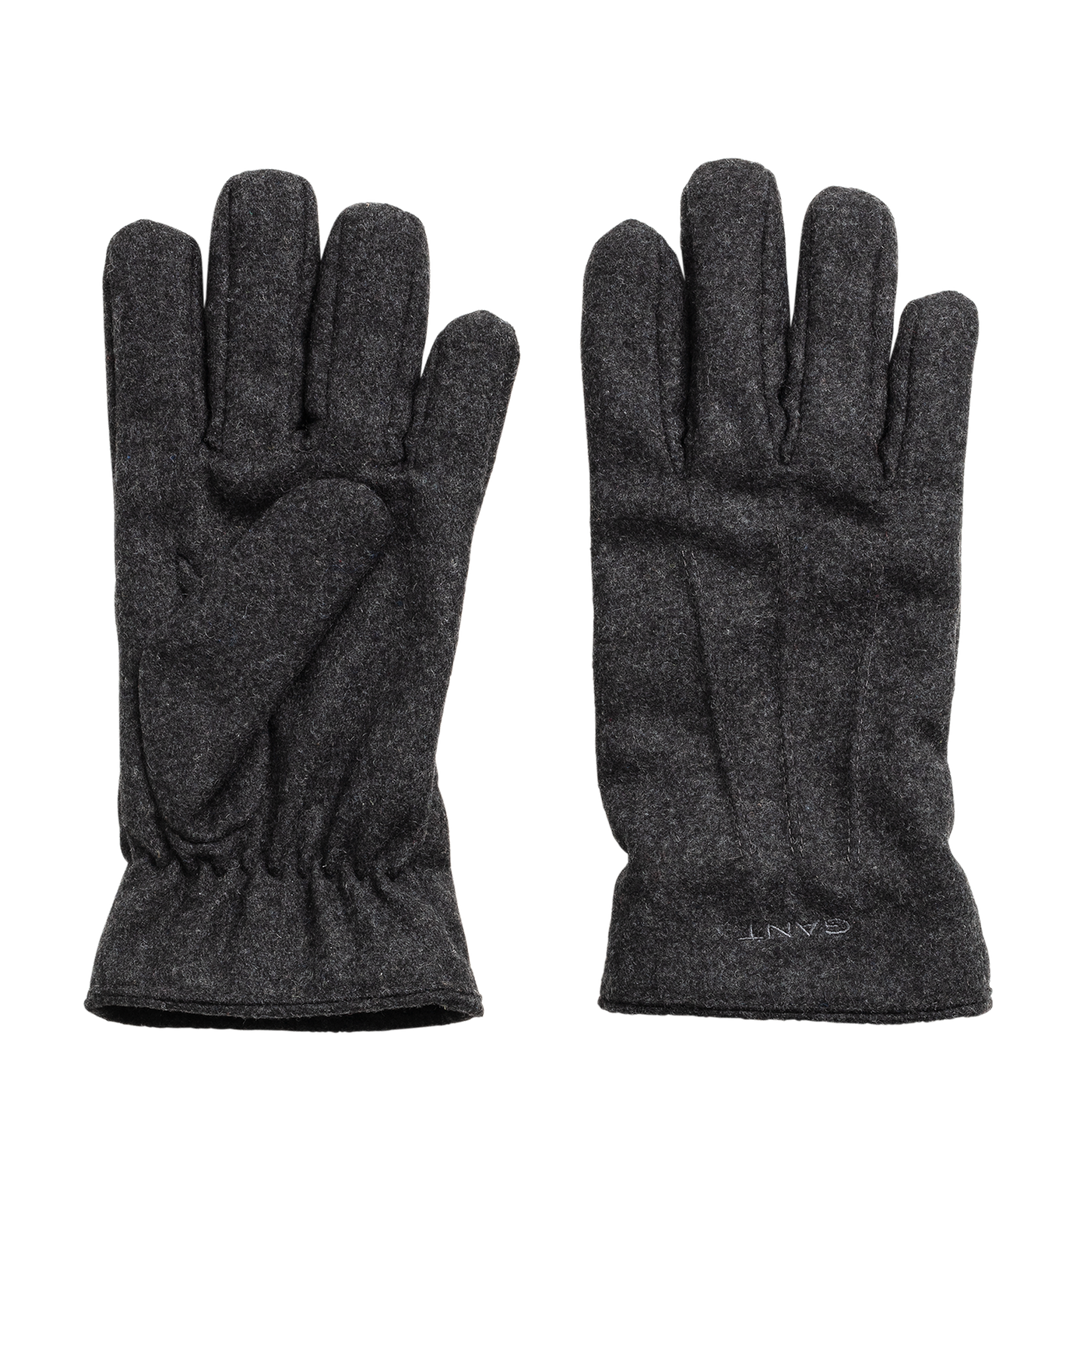 Melton Gloves